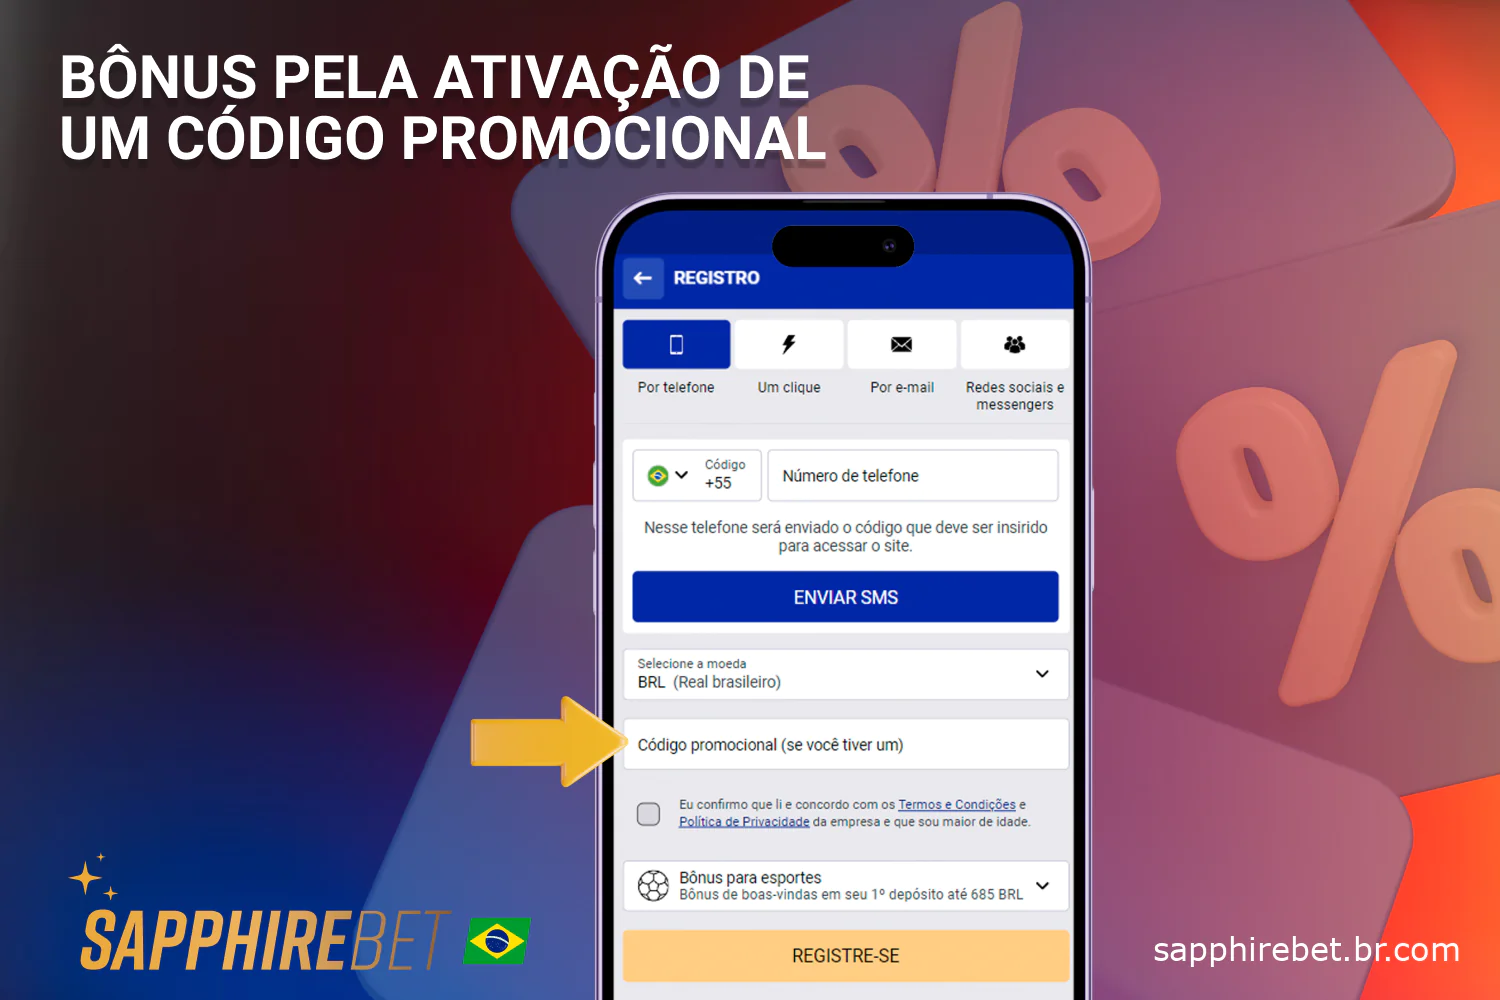 Os brasileiros que aplicaram o Sapphirebet bonus code durante a criação da conta têm o direito de receber um bônus de boas-vindas no primeiro depósito